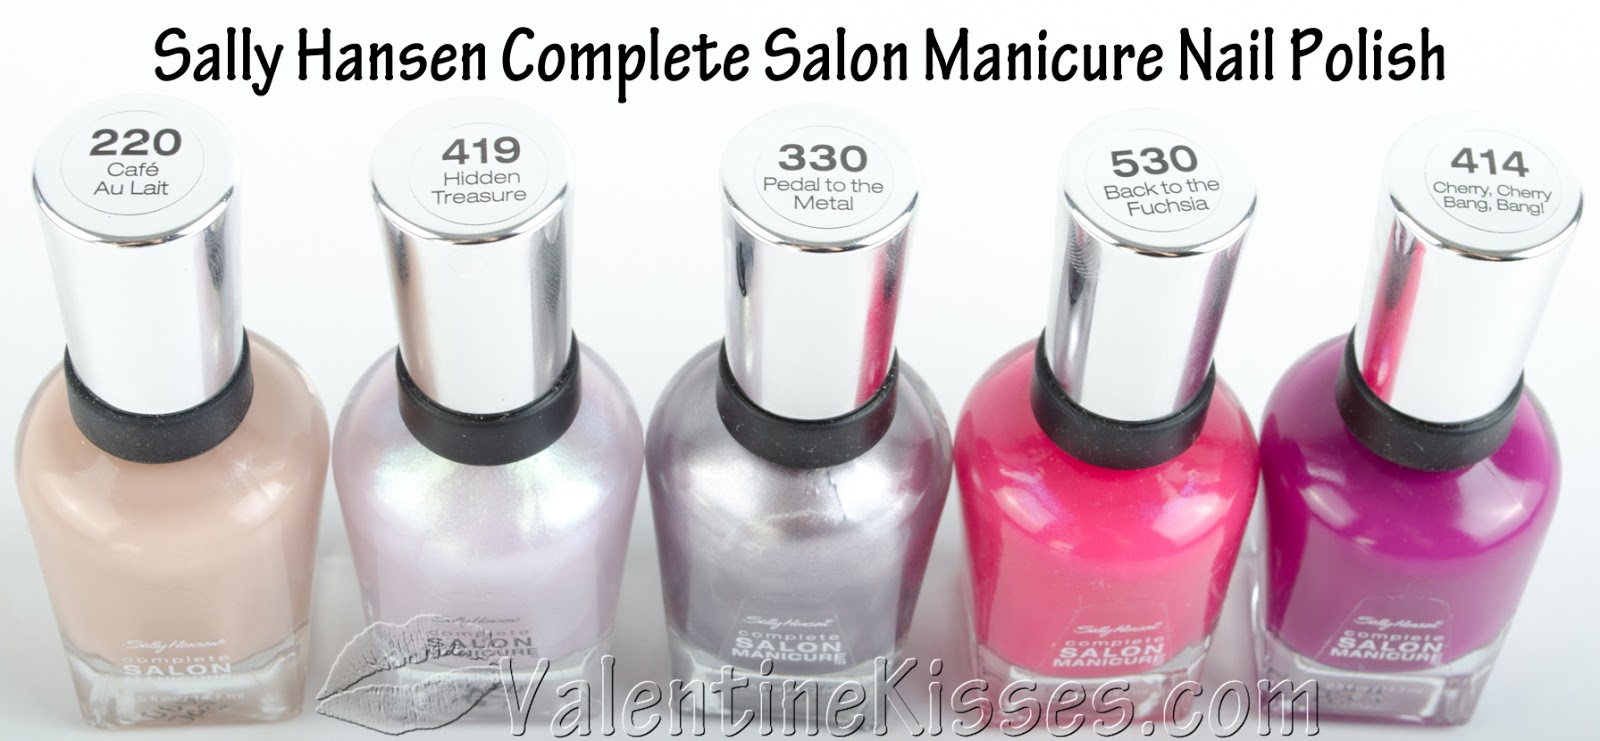 3. "Sally Hansen Complete Salon Manicure in "Cafe Au Lait" - wide 4